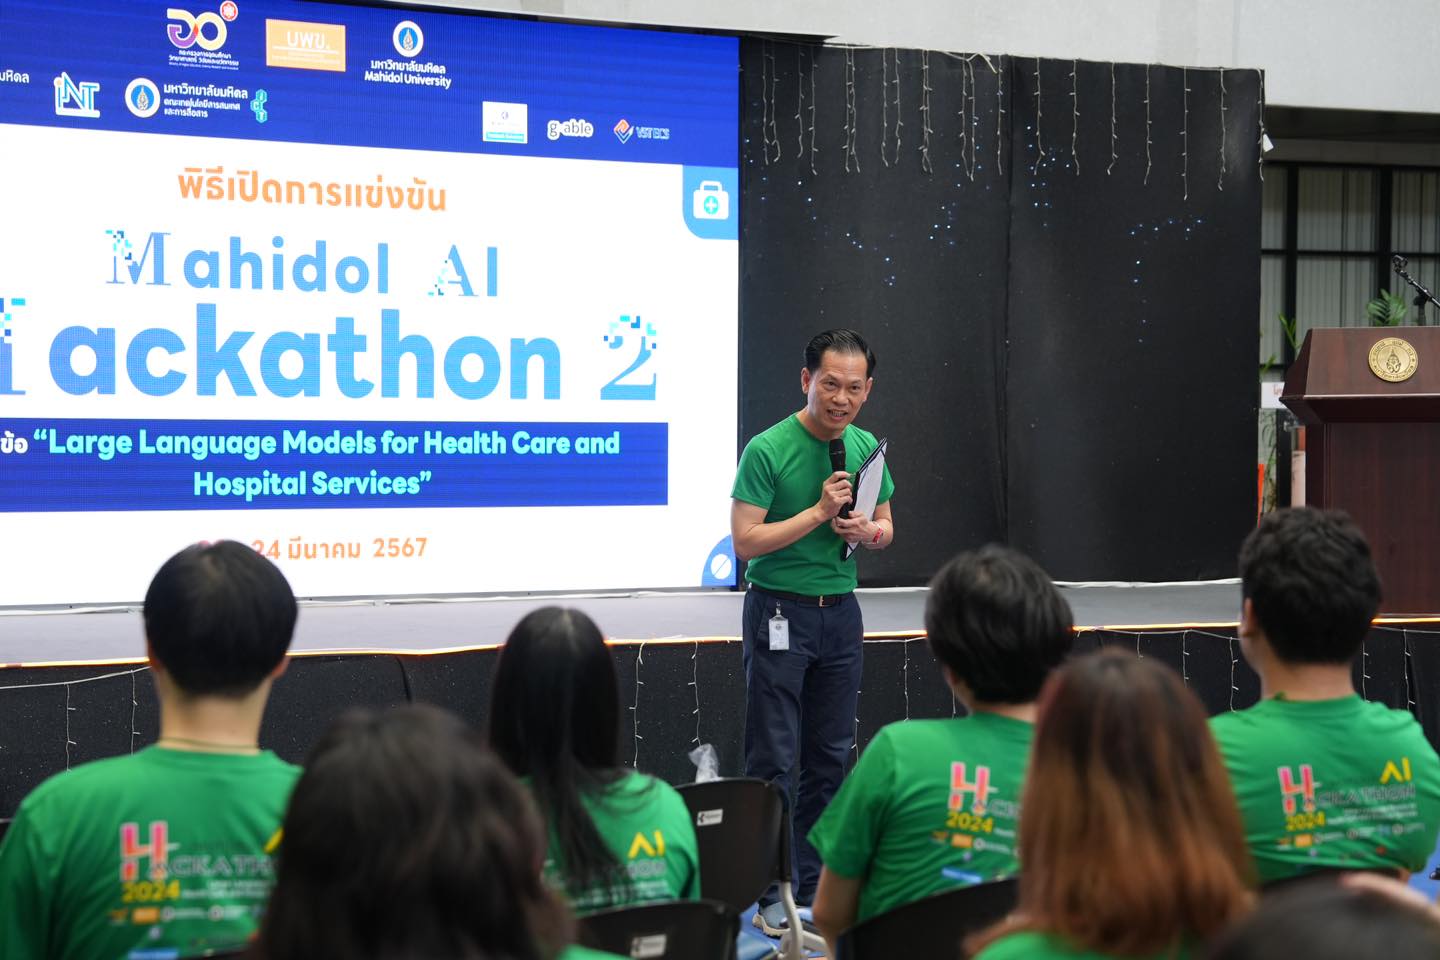 ดร. พัฒนศักดิ์ มงคลวัฒน์ คณบดี คณะเทคโนโลยีสารสนเทศและการสื่อสาร มหาวิทยาลัยมหิดล (ICT Mahidol) เป็นประธานในพิธีเปิดโครงการแข่งขัน Mahidol AI Hackathon 2 หัวข้อ Large Language Models for Health Care and Hospital Services